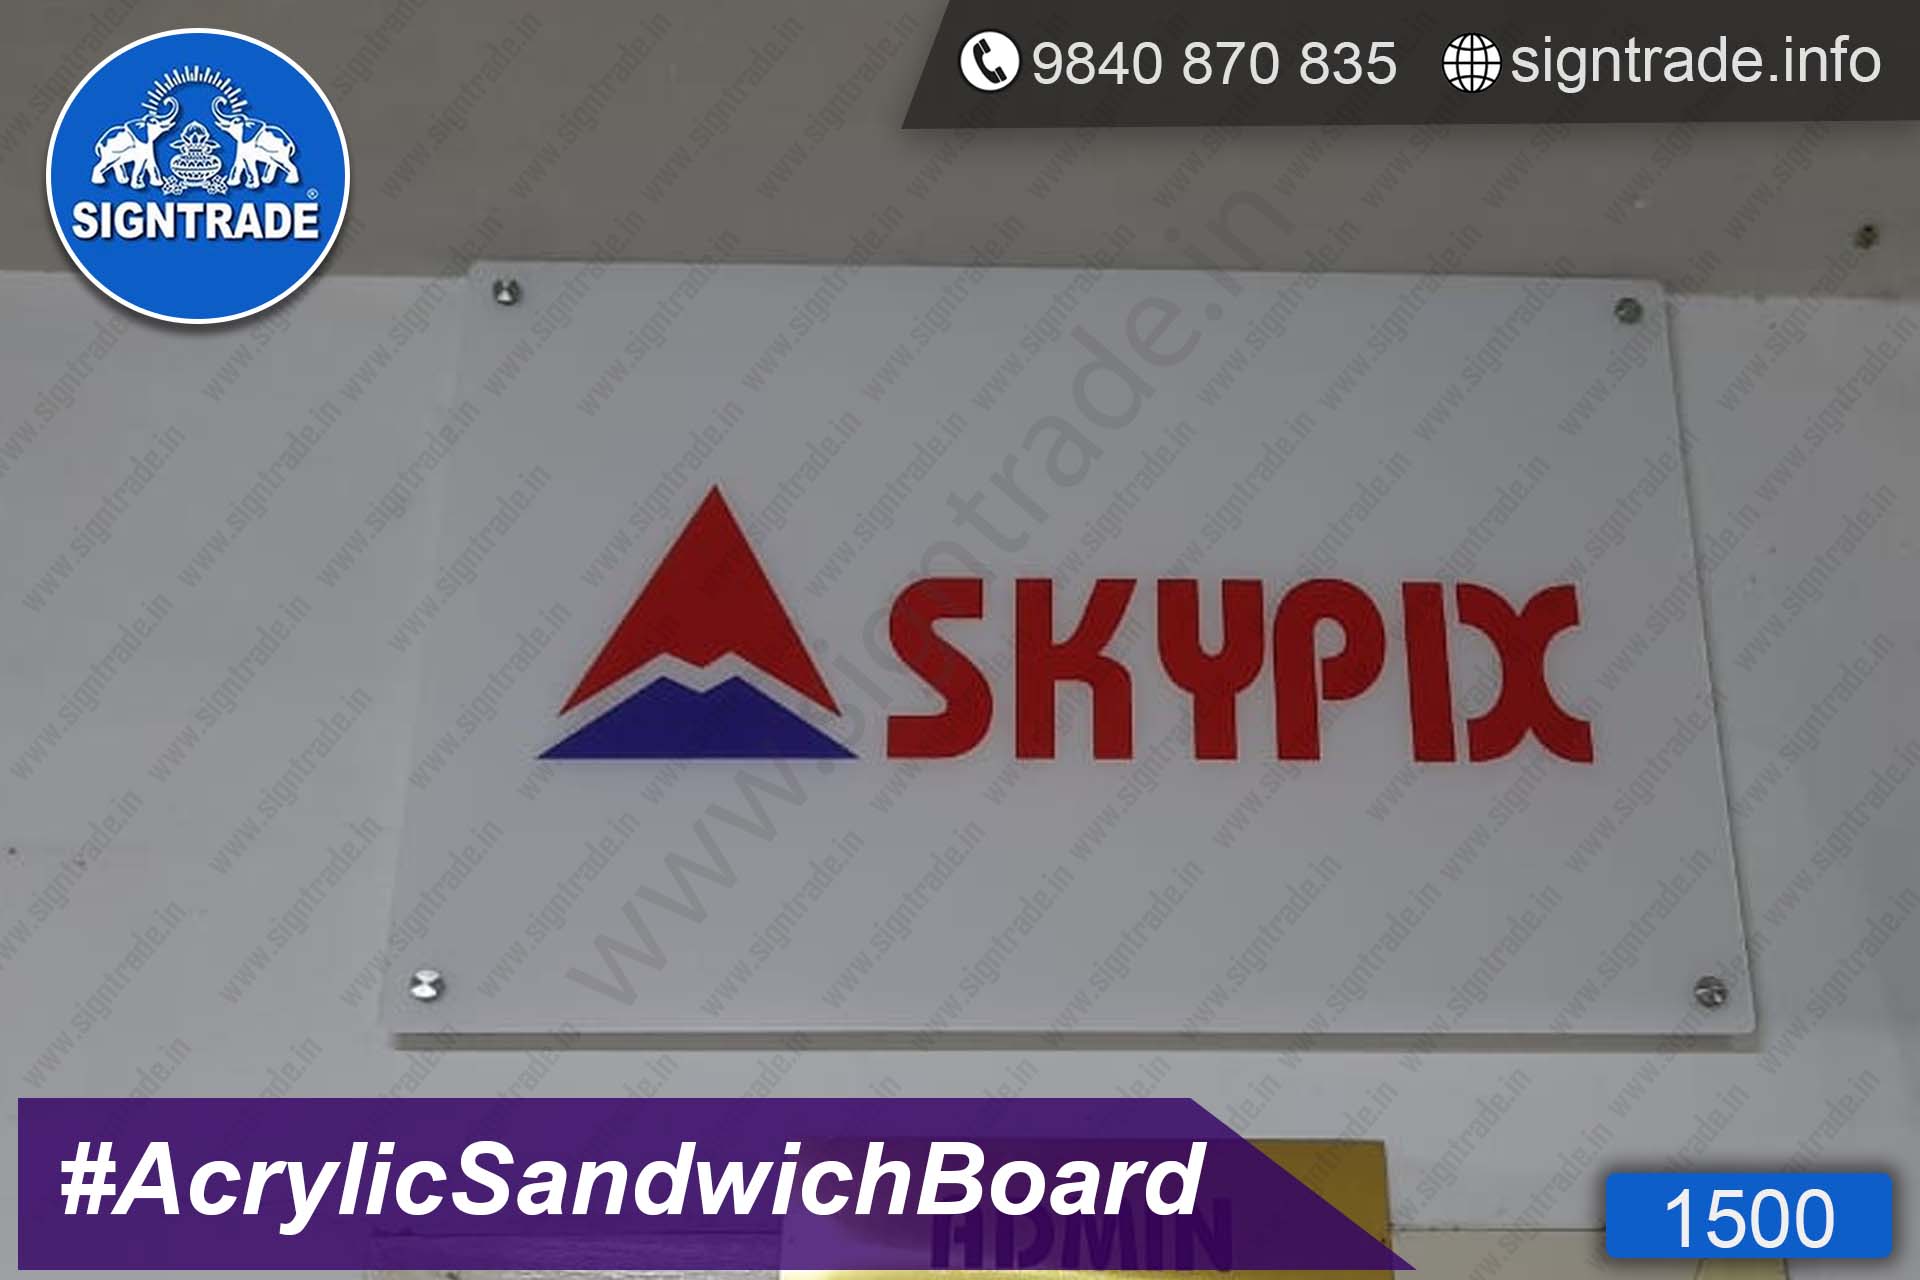 sandwich-board-1500